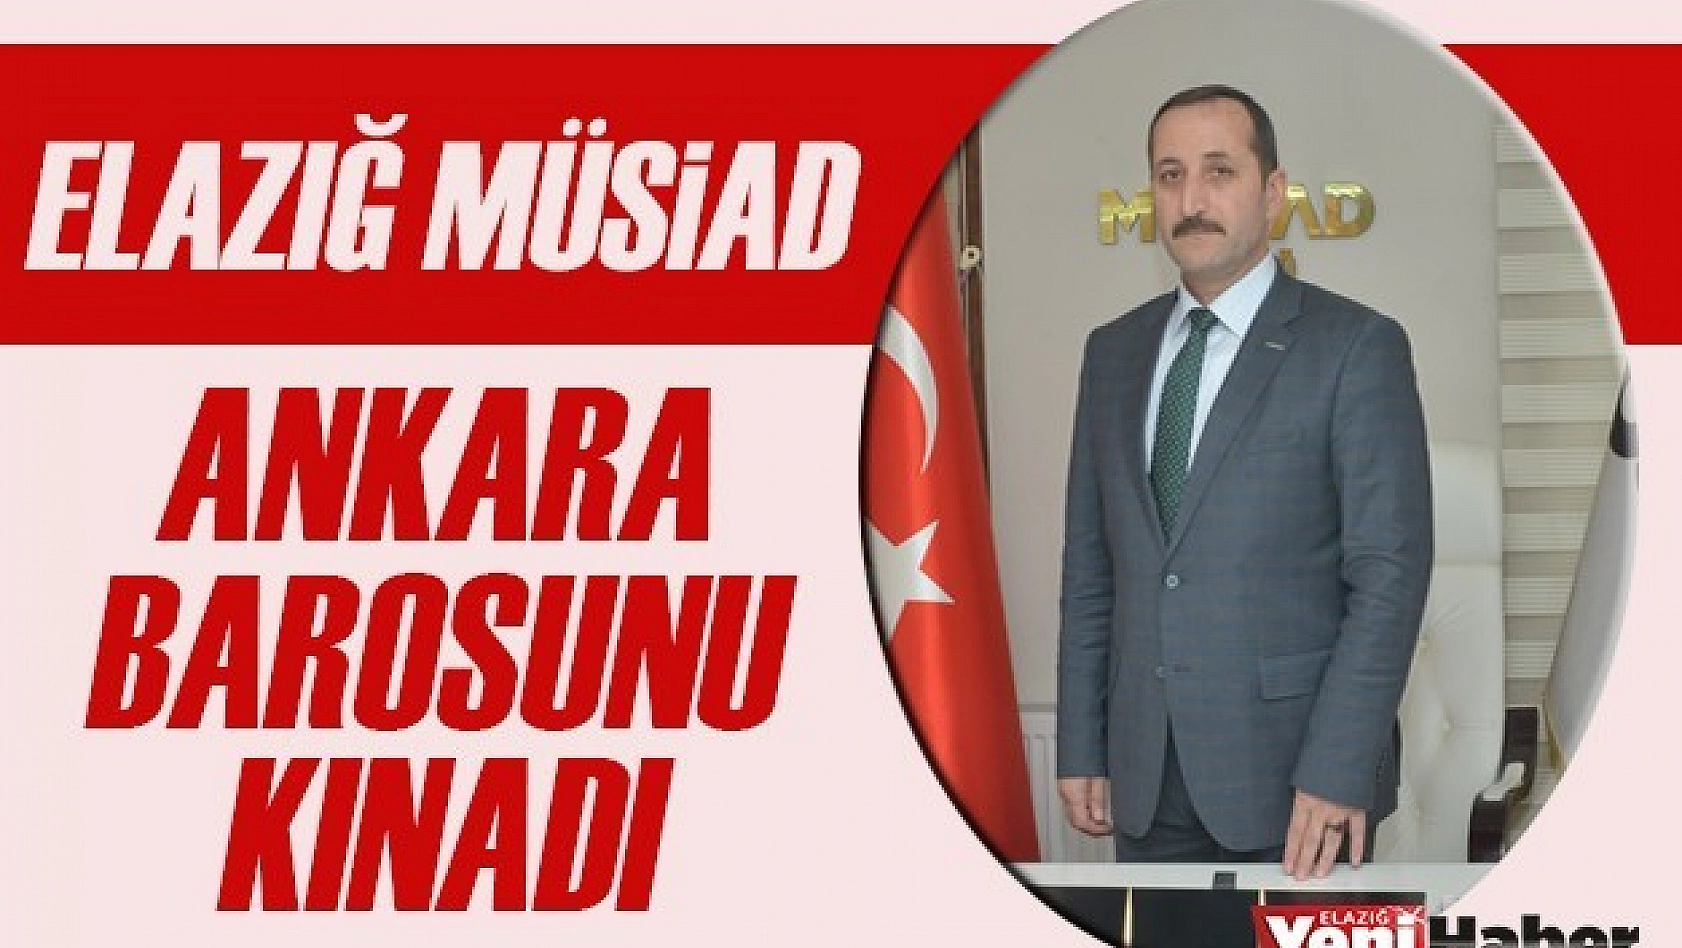 Elazığ Müsiad, Ankara Barosunu Kınadı